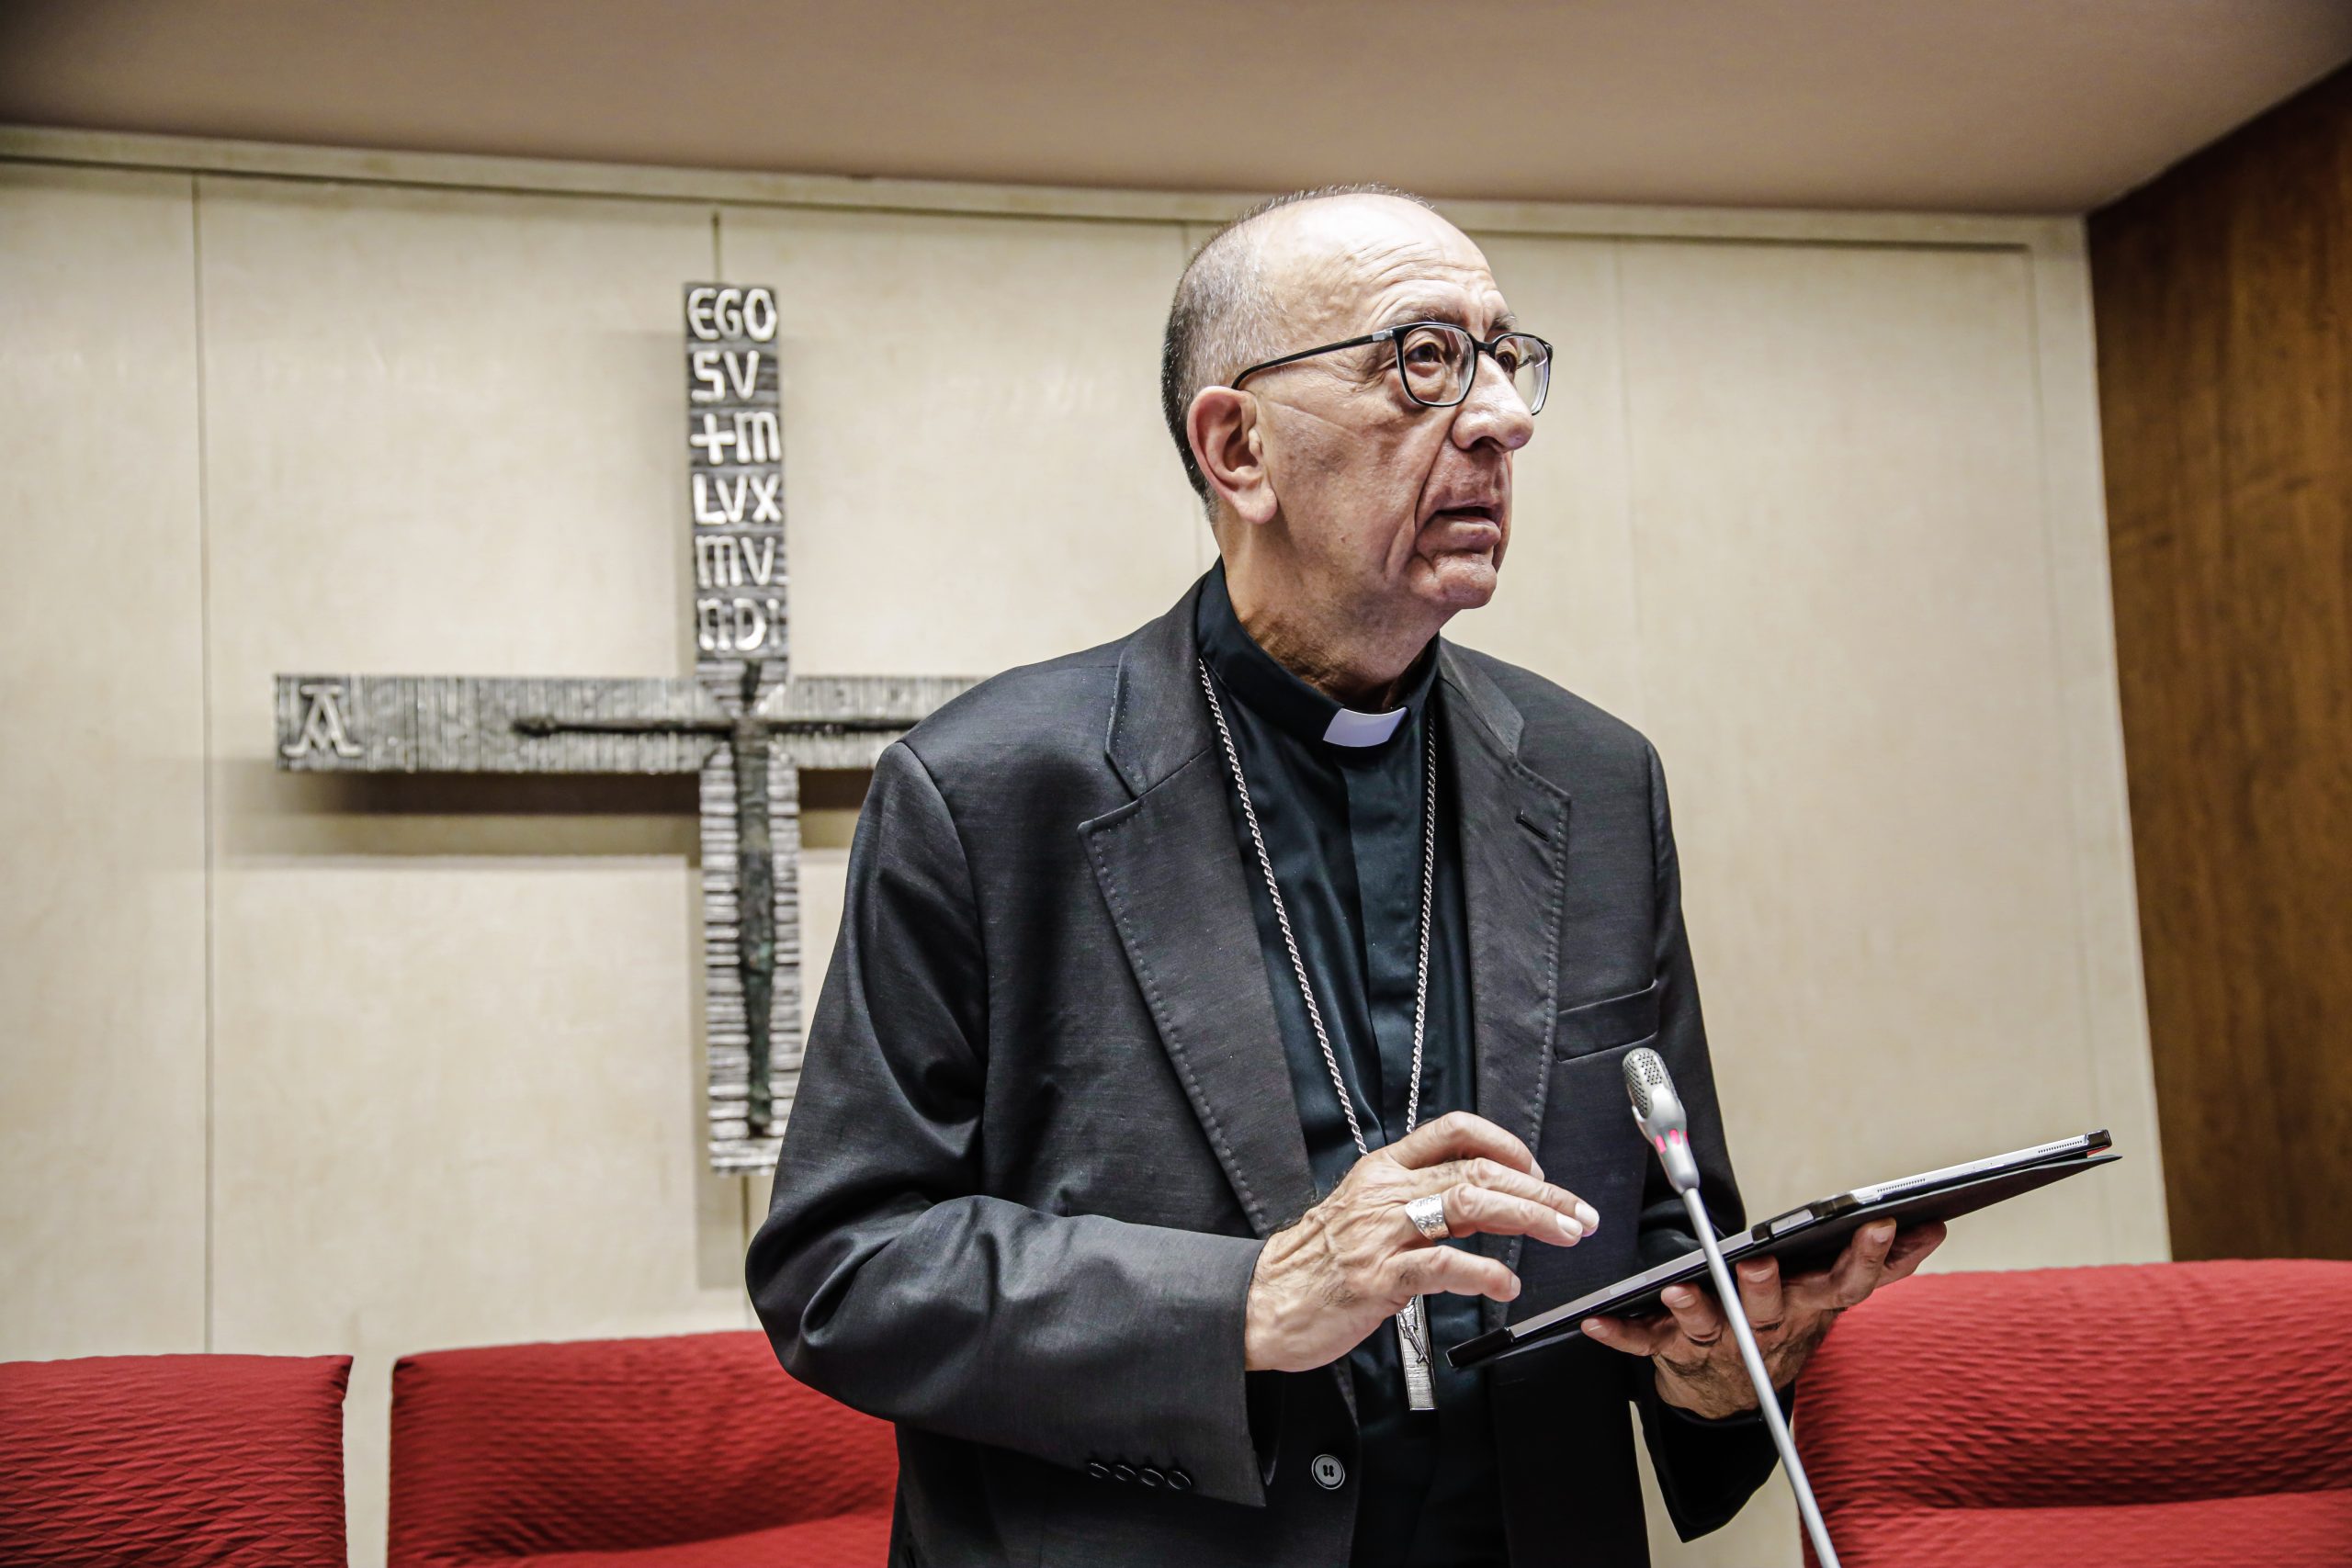 La Iglesia española se someterá a una auditoría independiente sobre abusos sexuales